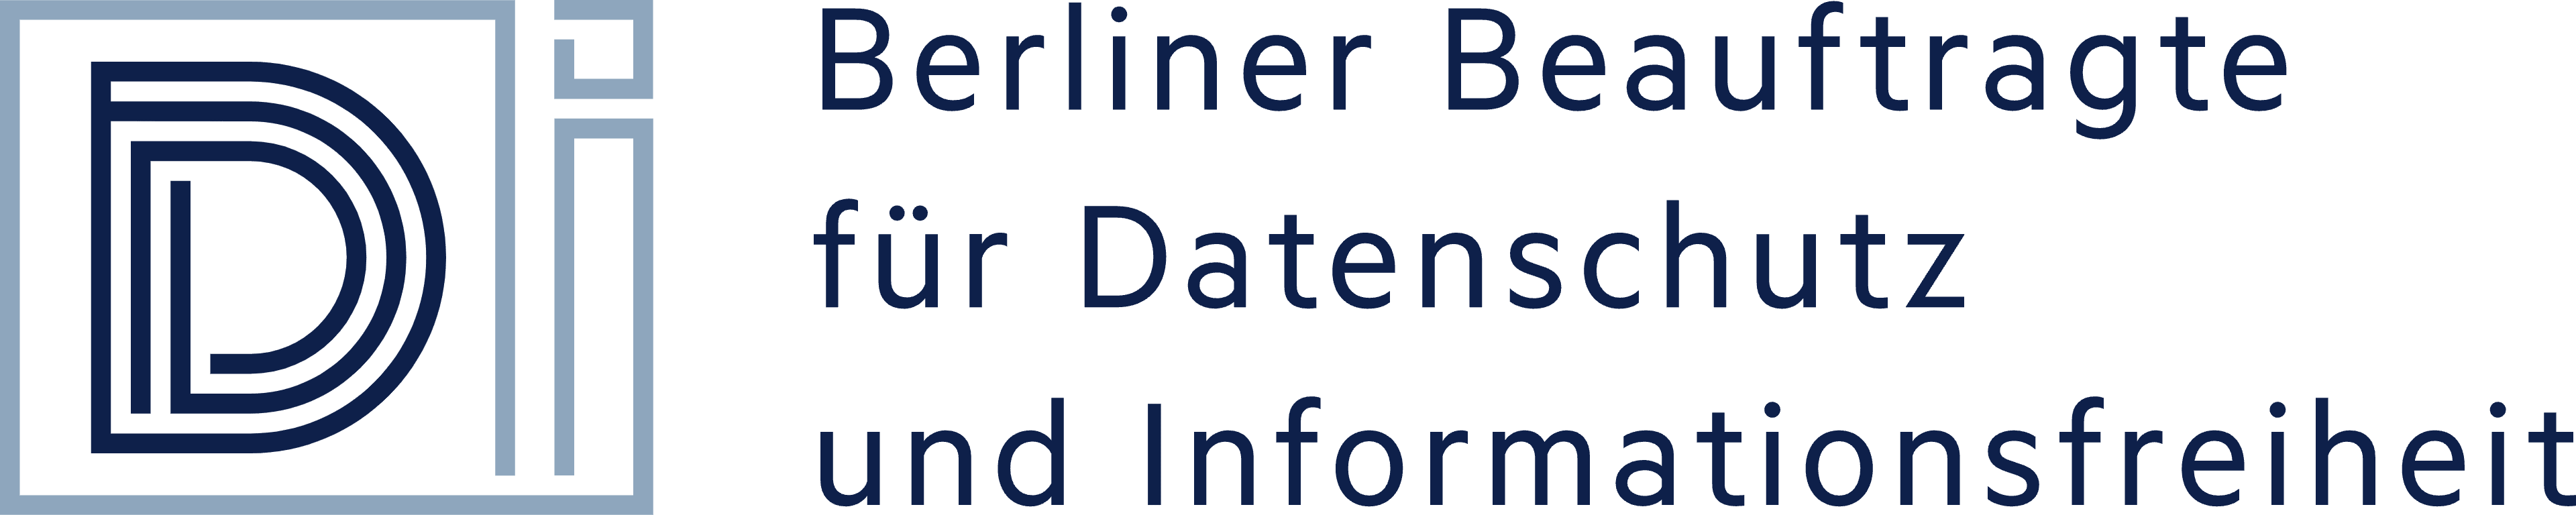 Berliner Beauftragte für Datenschutz und Informationsfreiheit logo